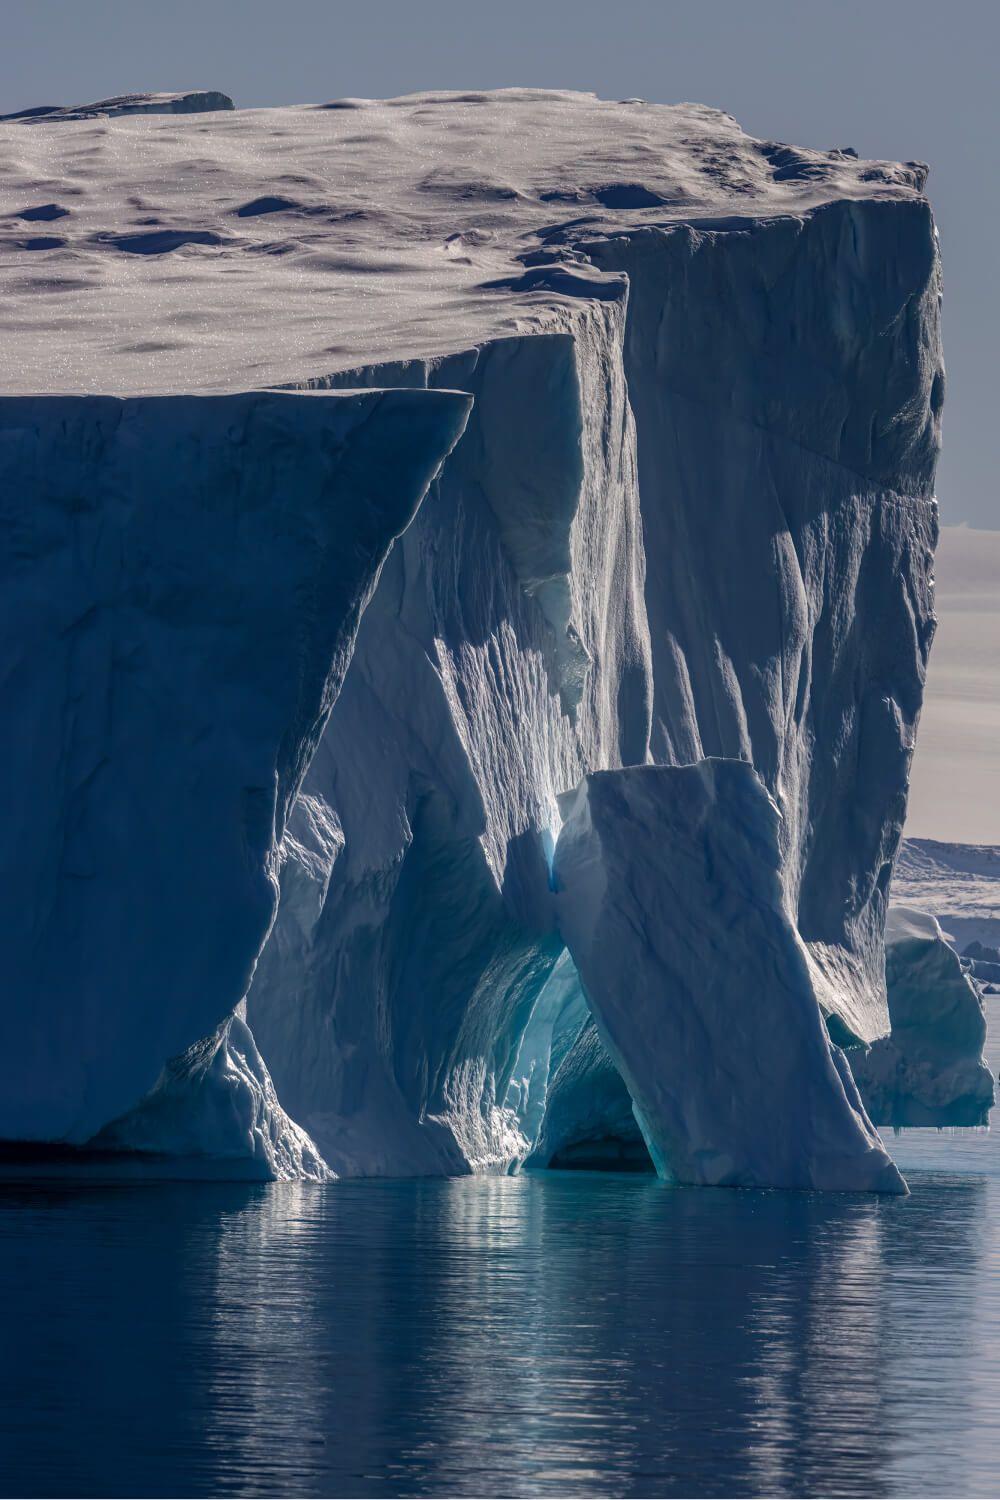 عظمة القطب الجنوبي المصور: أرتيم شيستاكوف. المكان: القطب الجنوبي.